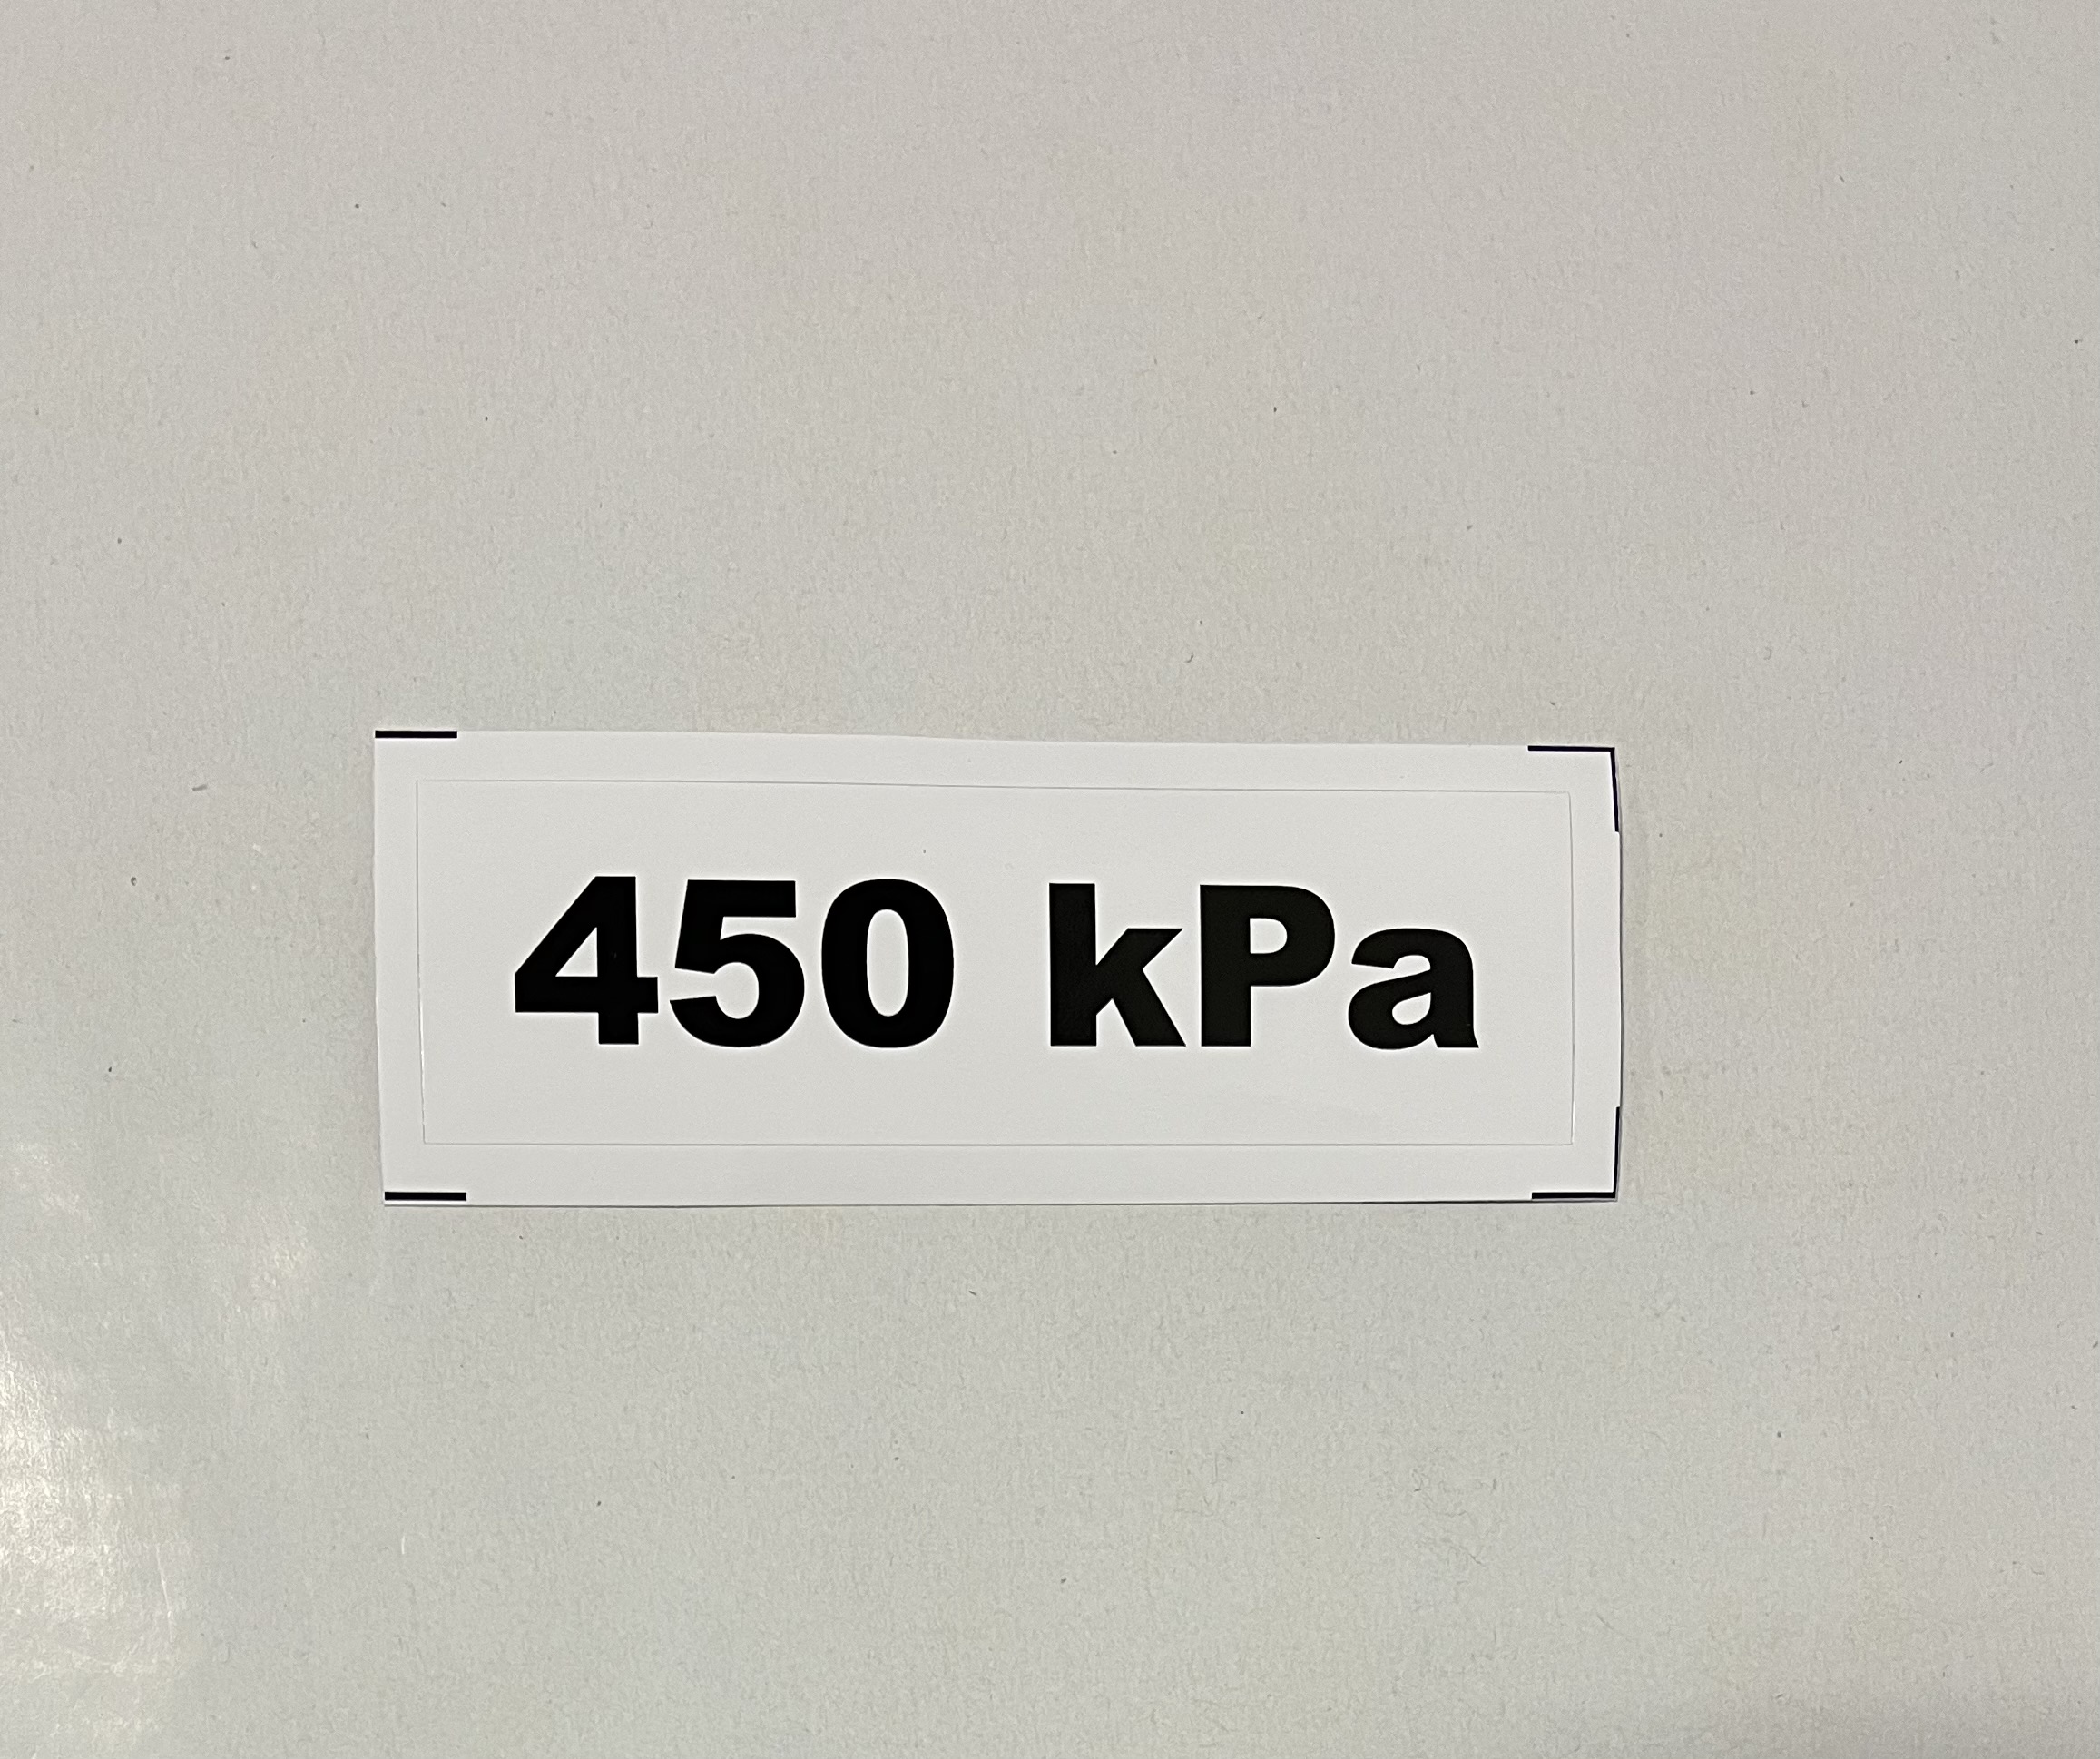 Označenie kPa 450